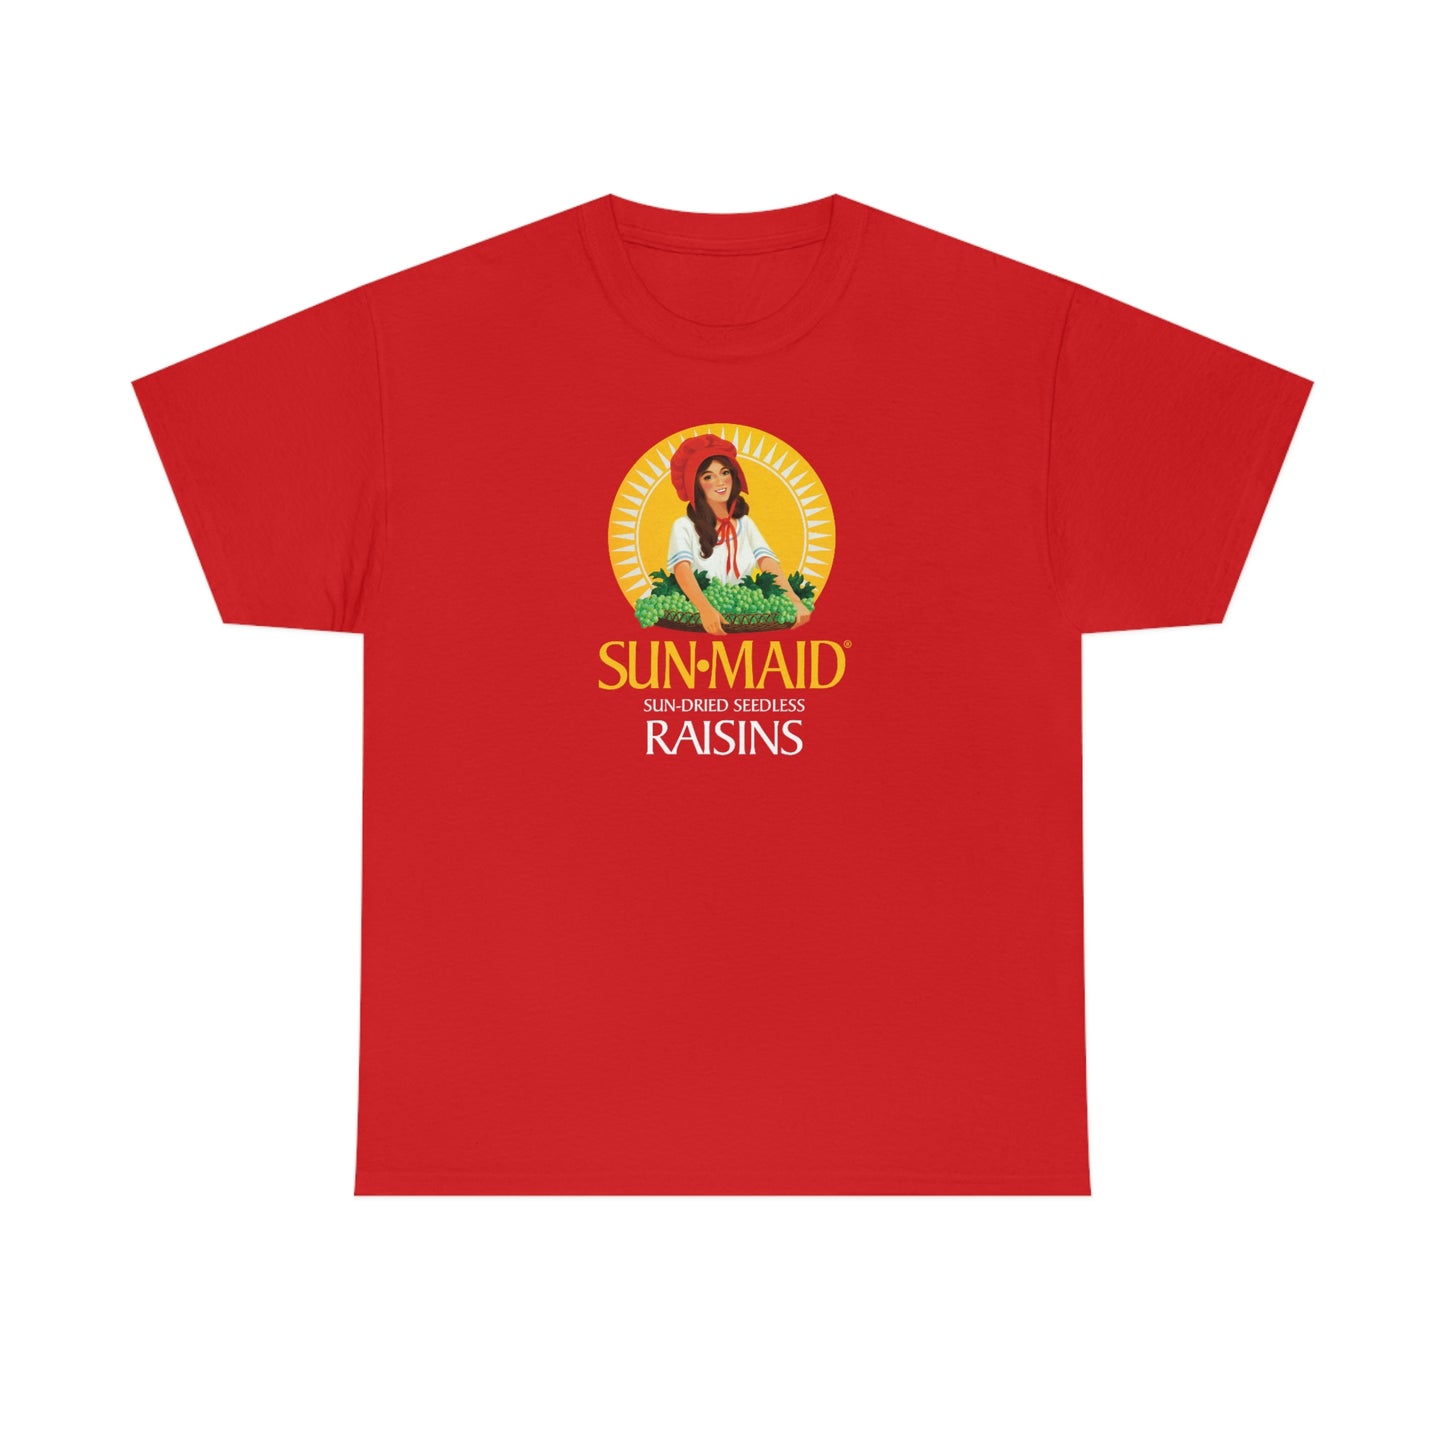 Sun-maid T-Shirt